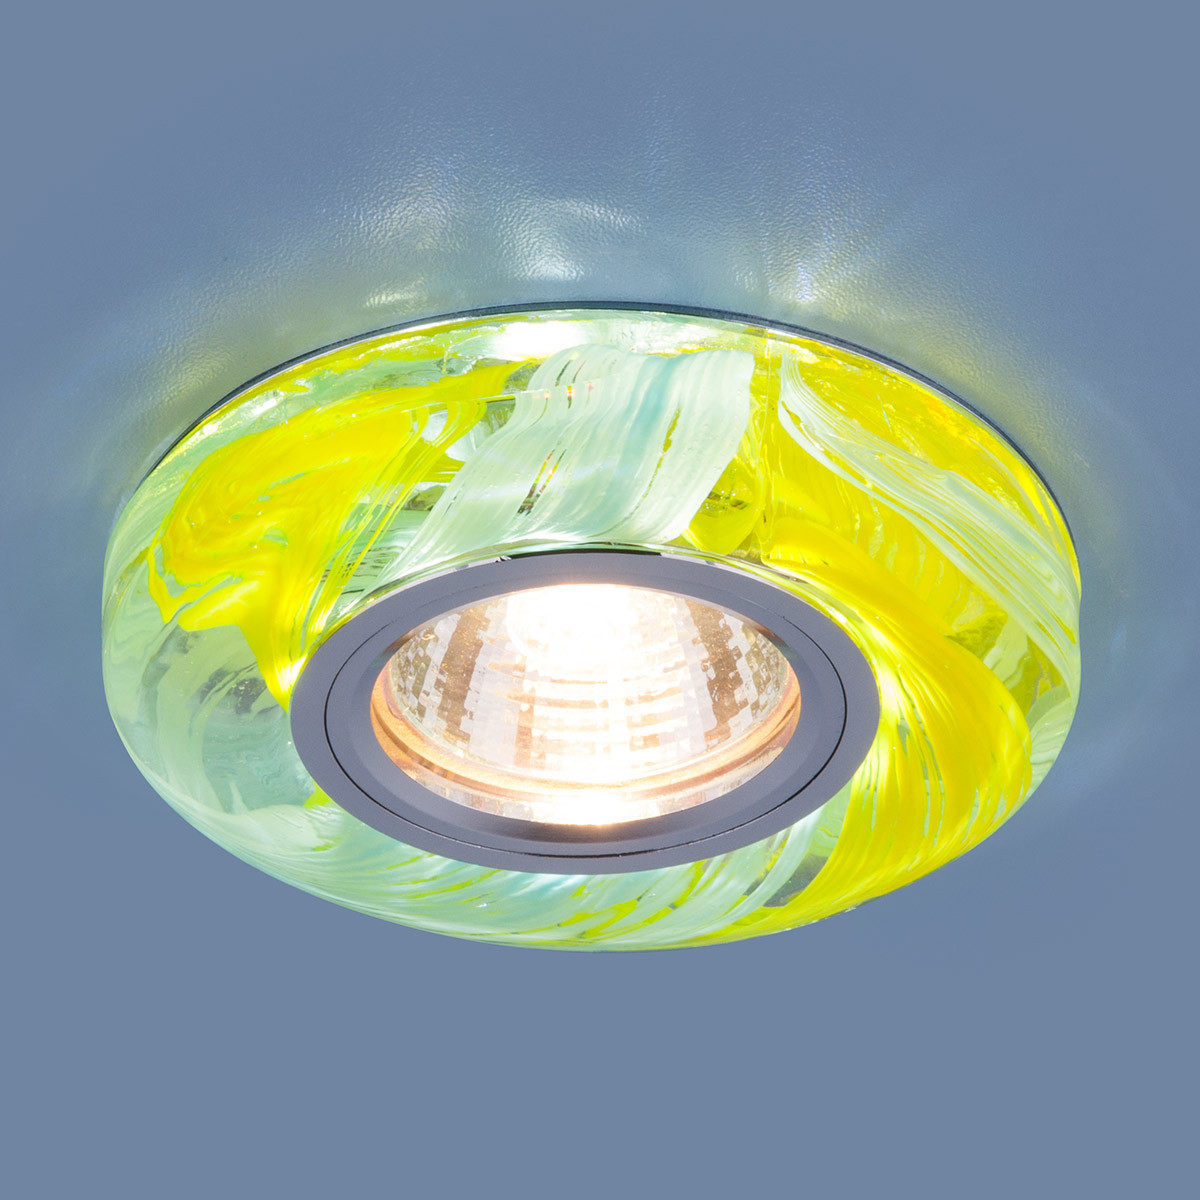 Точечный светильник со светодиодной подсветкой 2191 MR16 YL/BL желтый/голубой